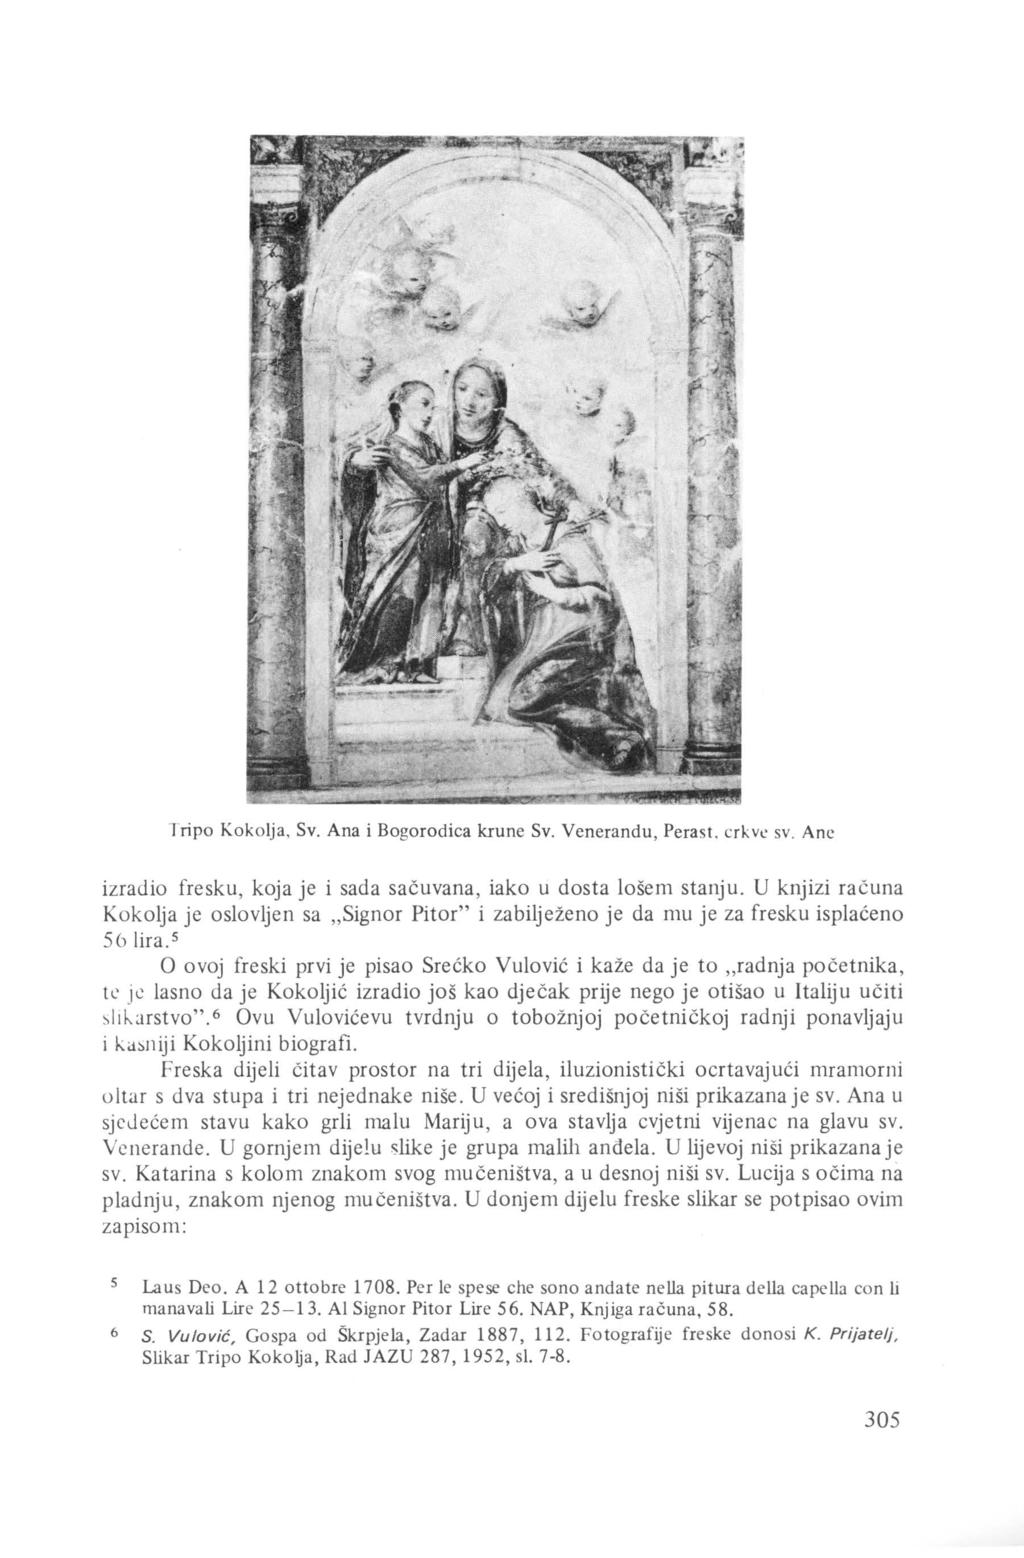 Tripo Kokolja, Sv. Ana i Bogorodica krune Sv. Venerandu, Perast. crkv..: sv. Ane izradio fresku, koja je i sada sačuvana, iako u dosta lošem stanju.